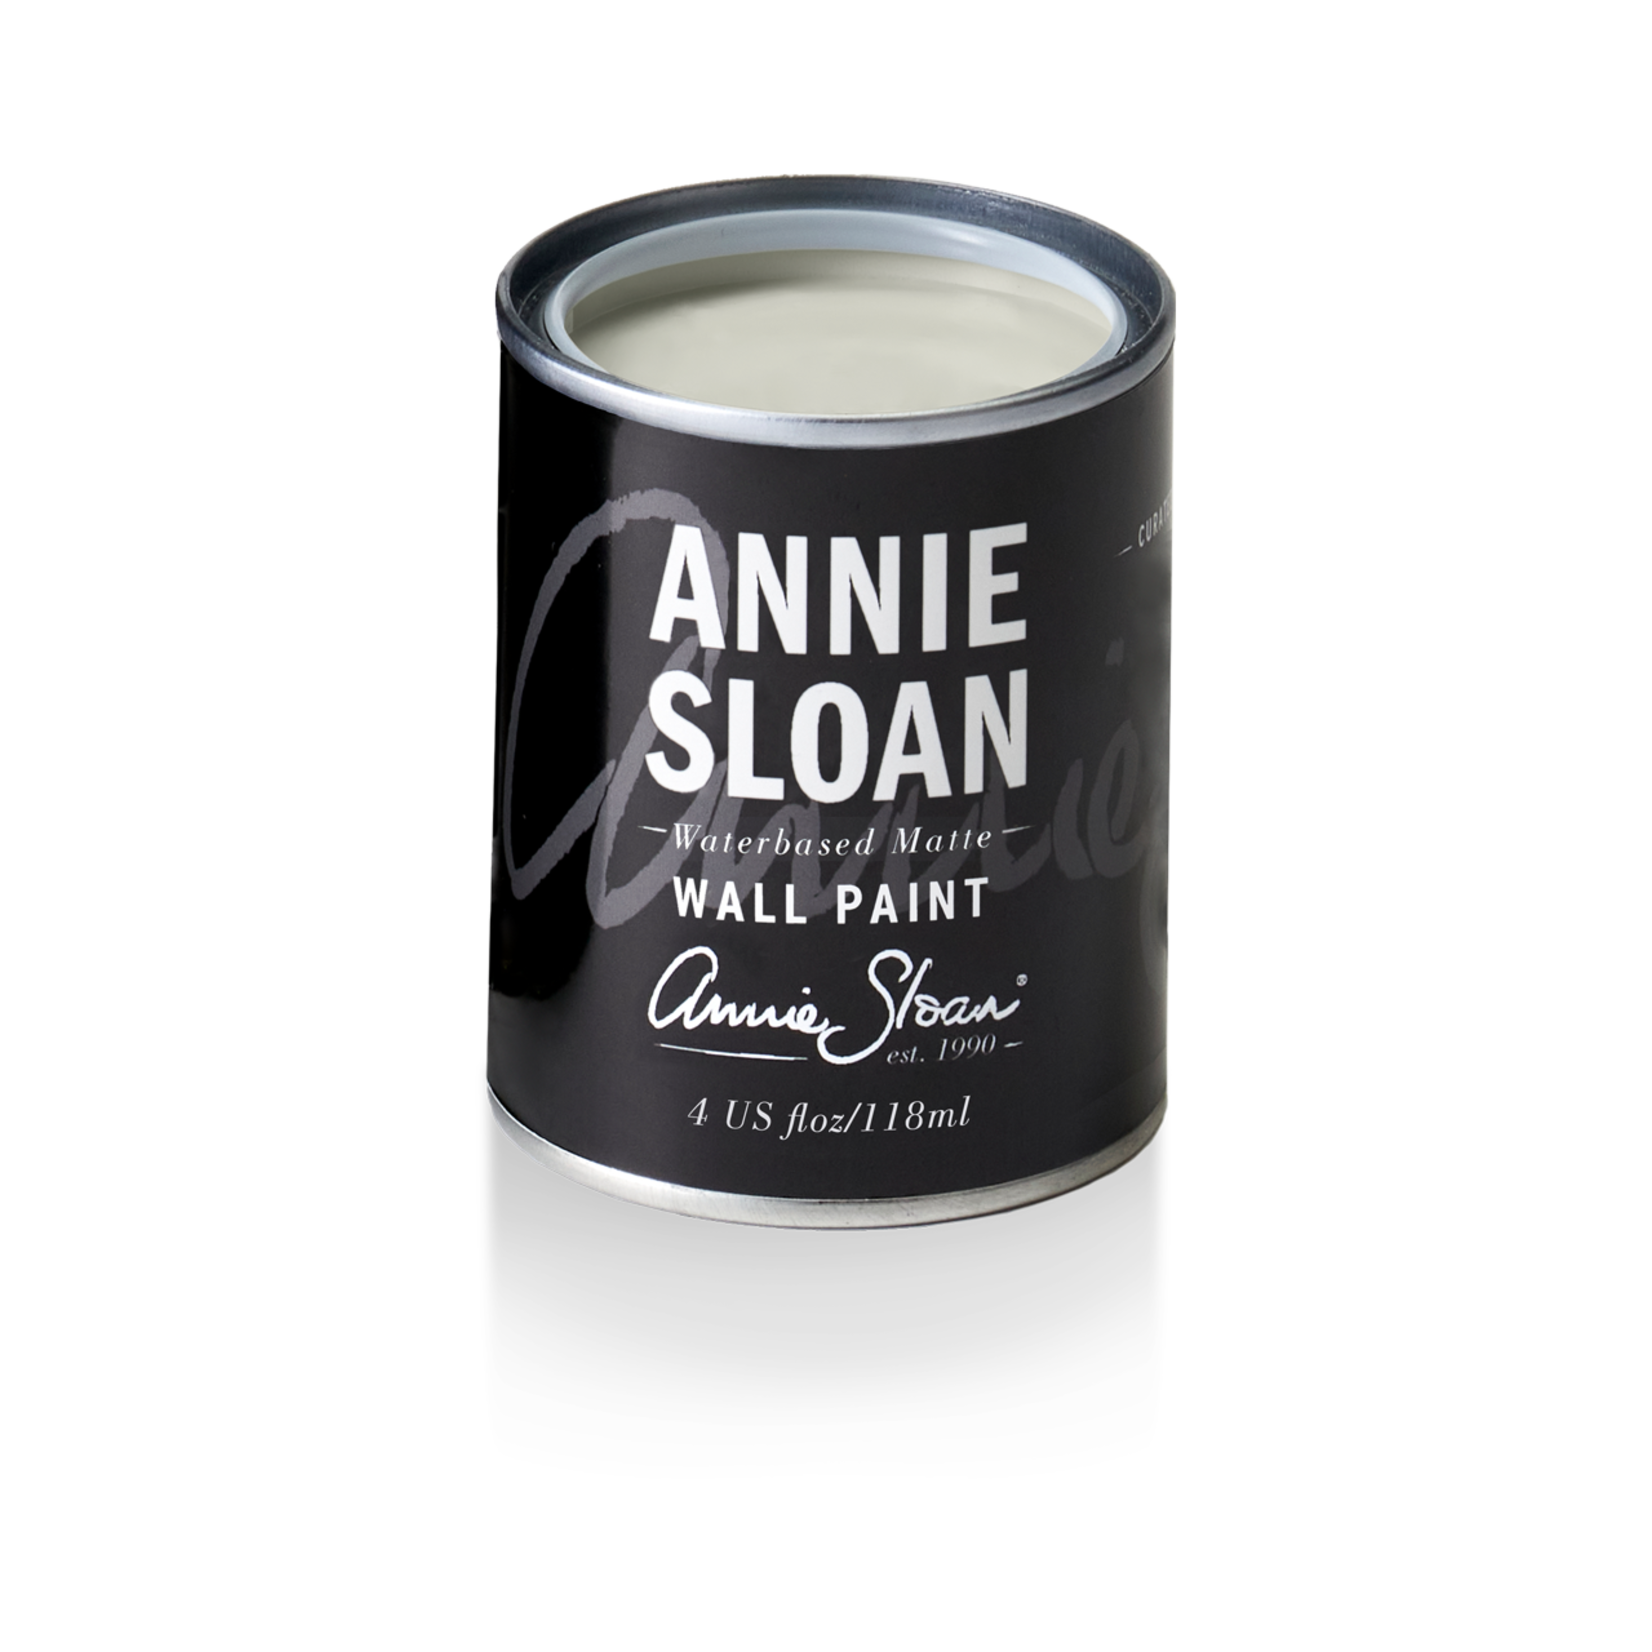 Annie Sloan Wall Paint 4oz Sample Can Doric